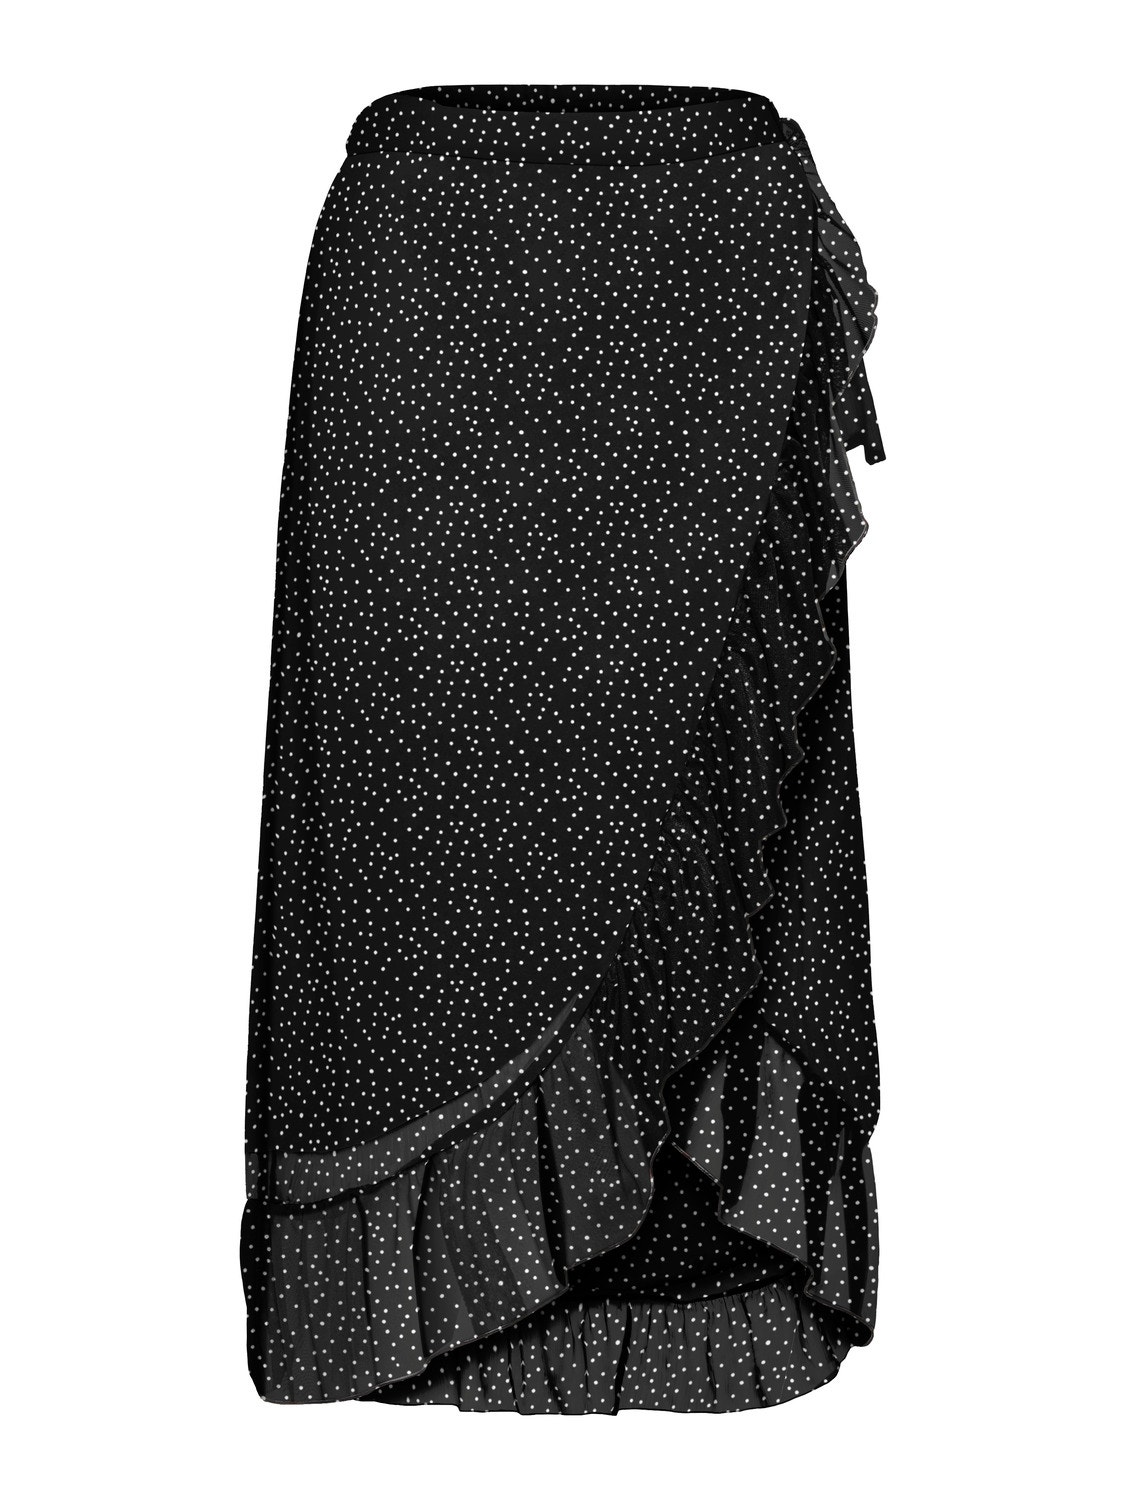 Vero Moda VMWONDA Long Skirt -Black - 10217167